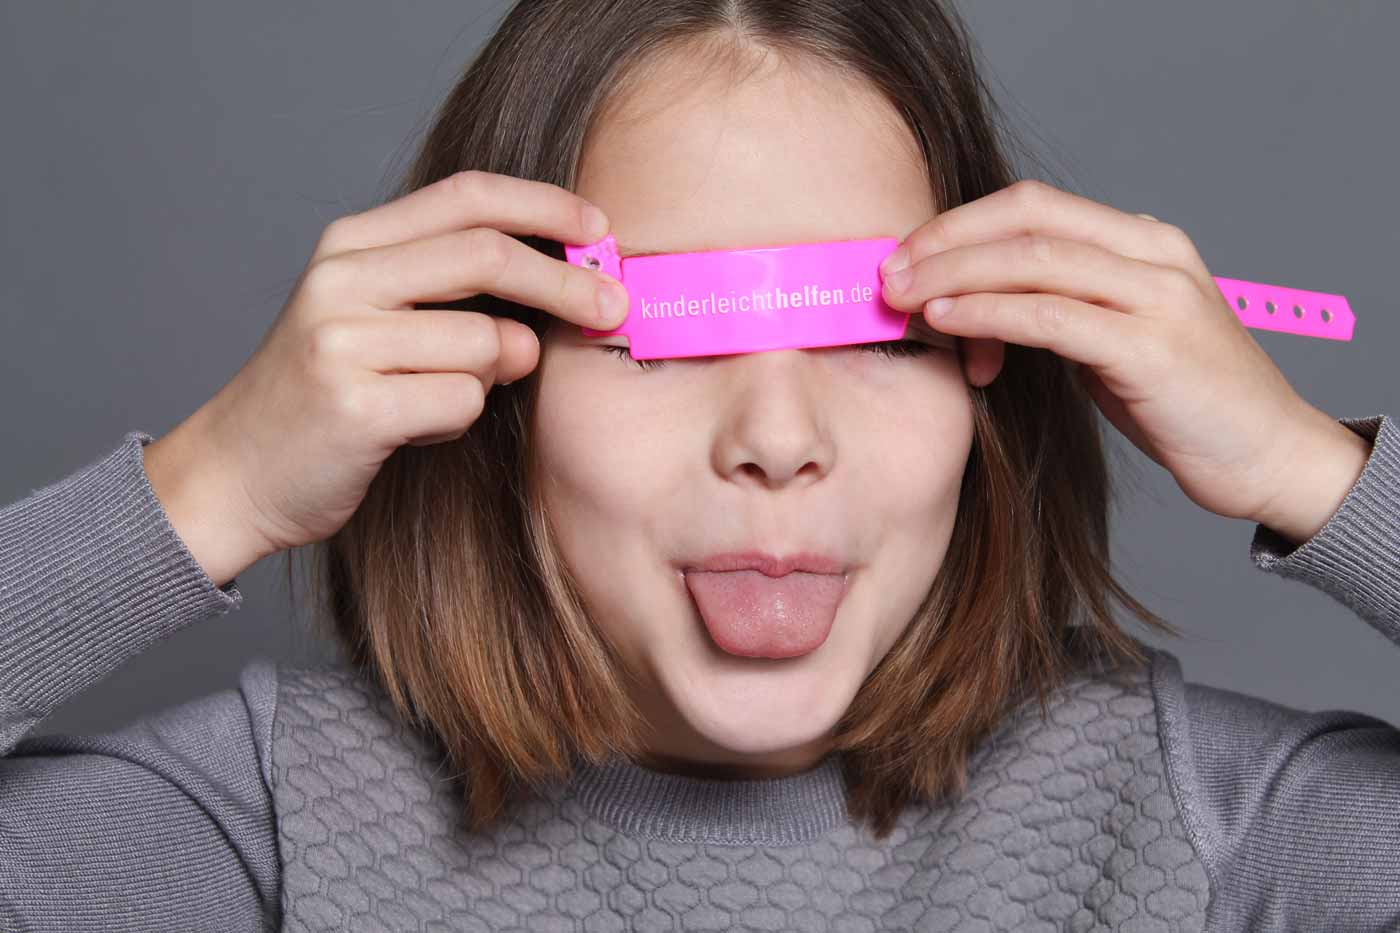 Kindermodel von "Keolas Kids" mit "kinderleicht helfen" Armband